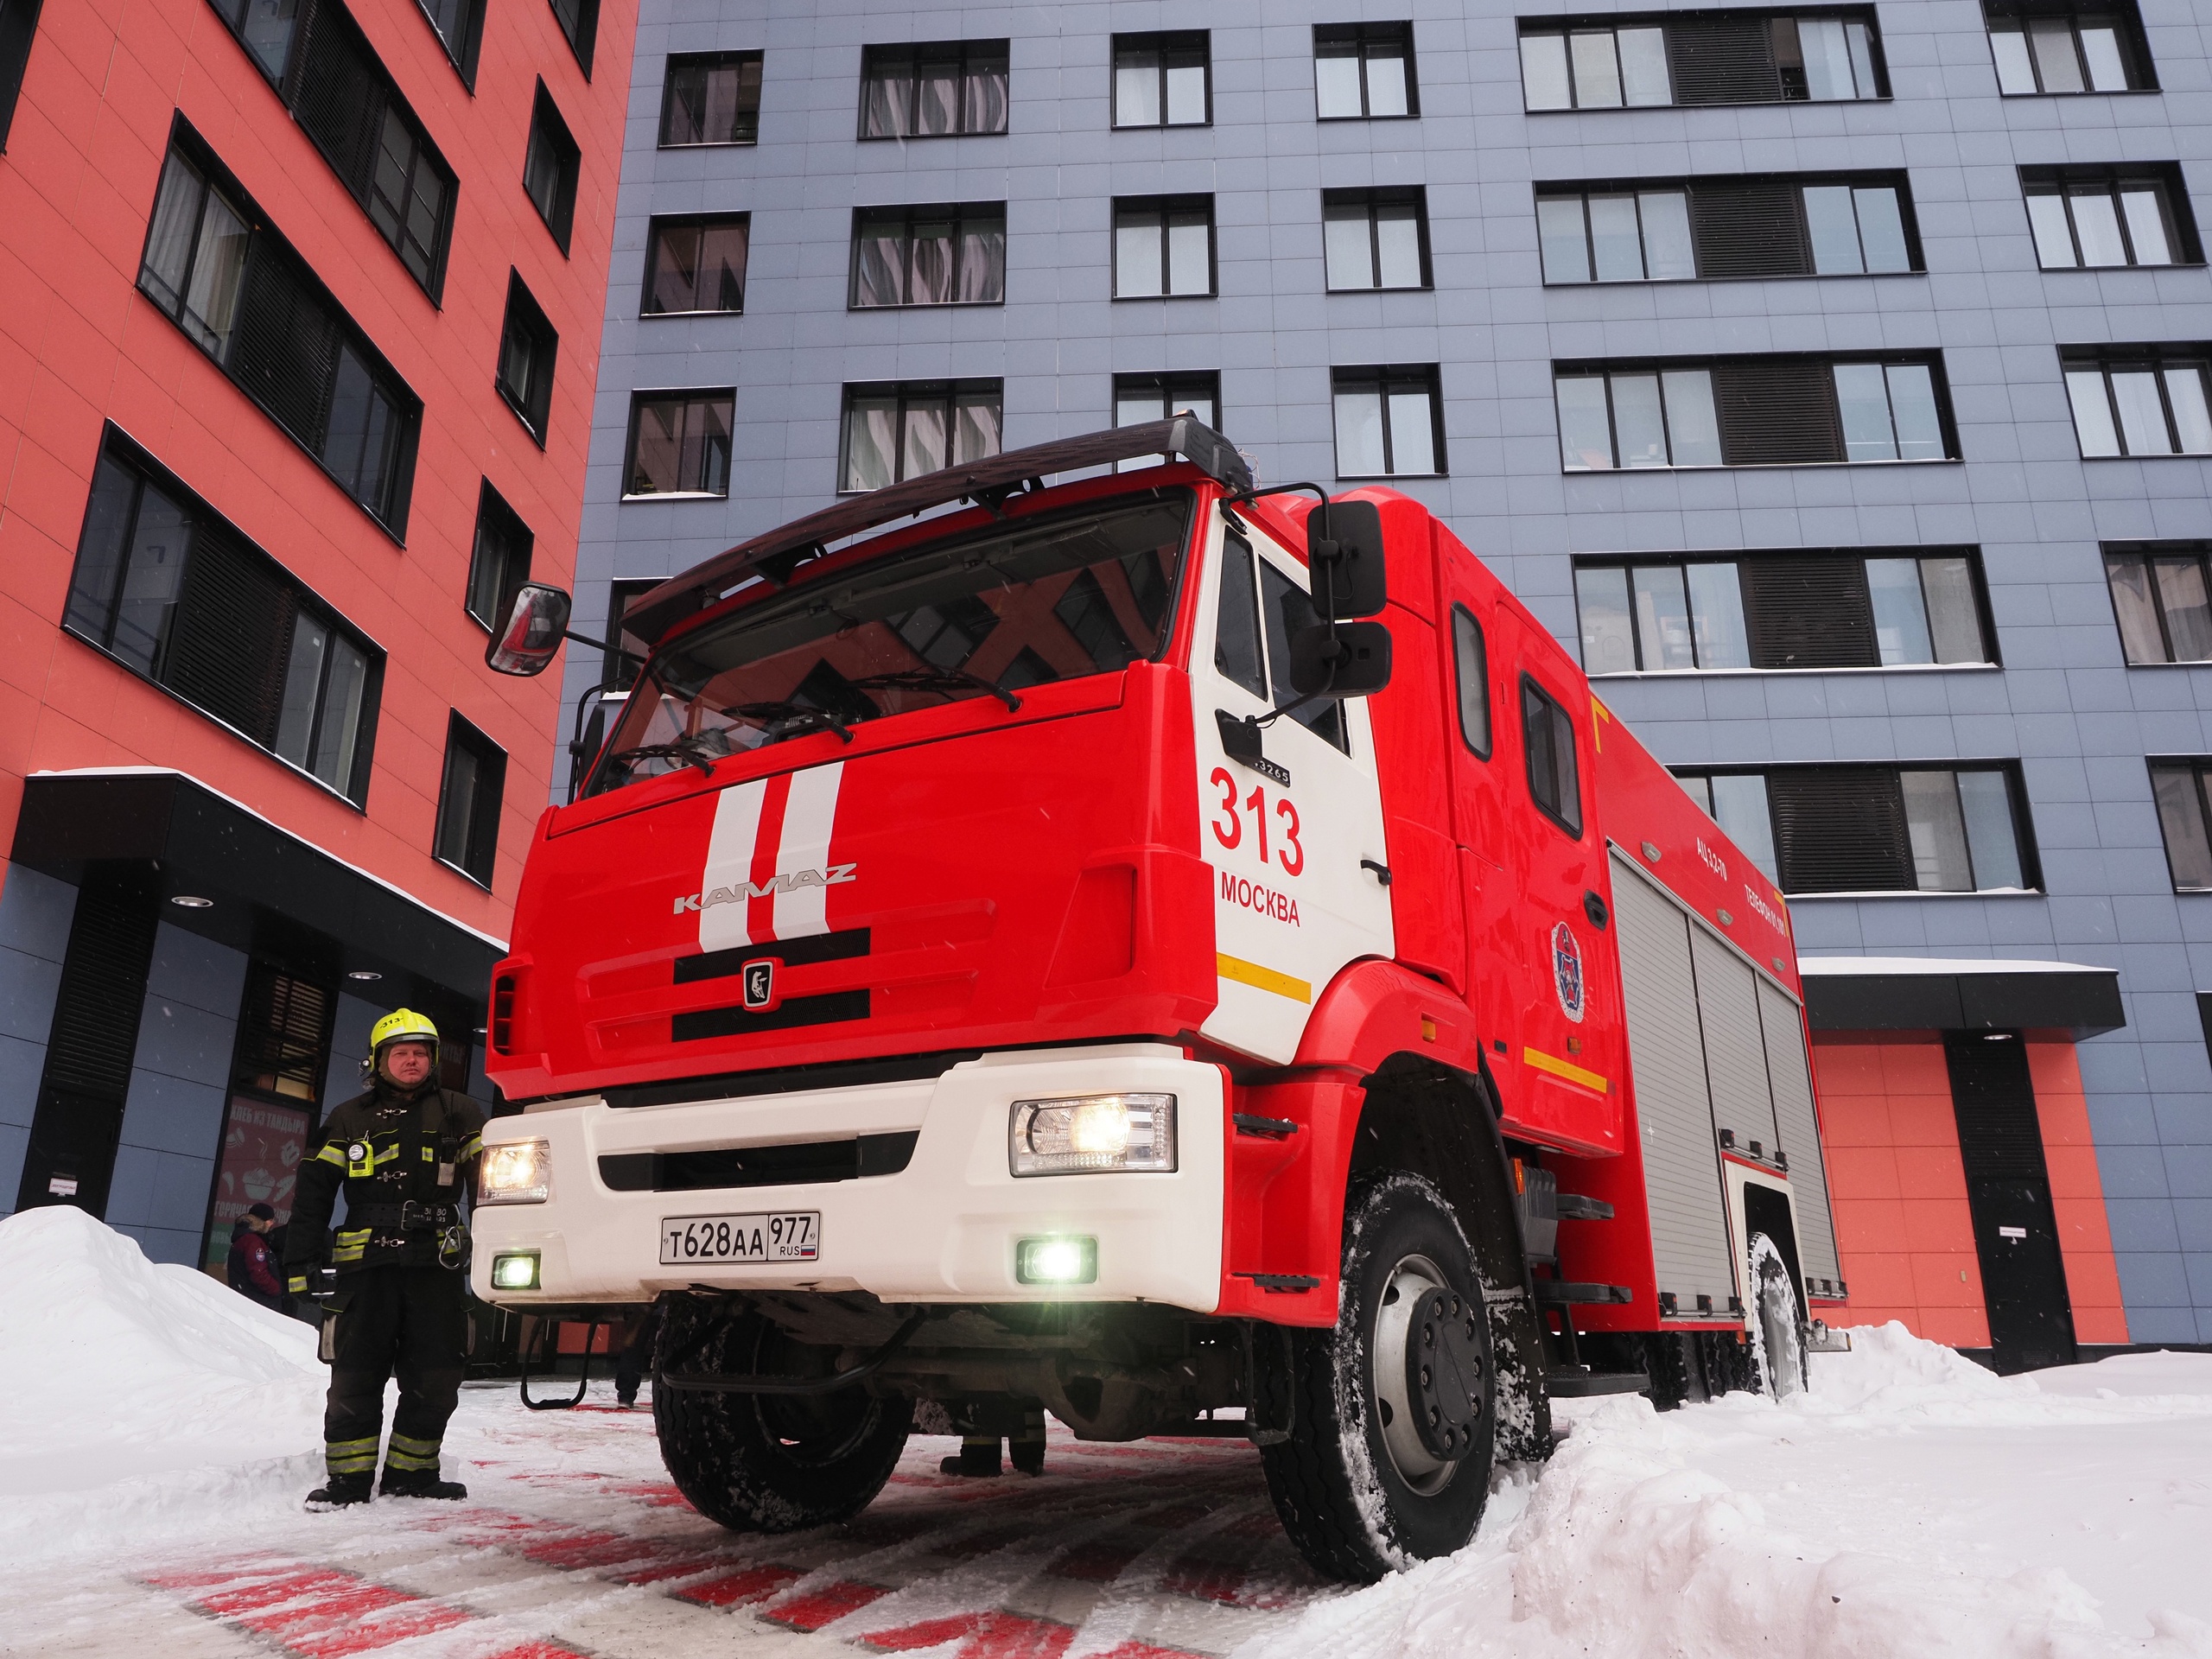 На территории ЖК «Филатов луг» работники пожарно-спасательного отряда № 313 провели тактические учения